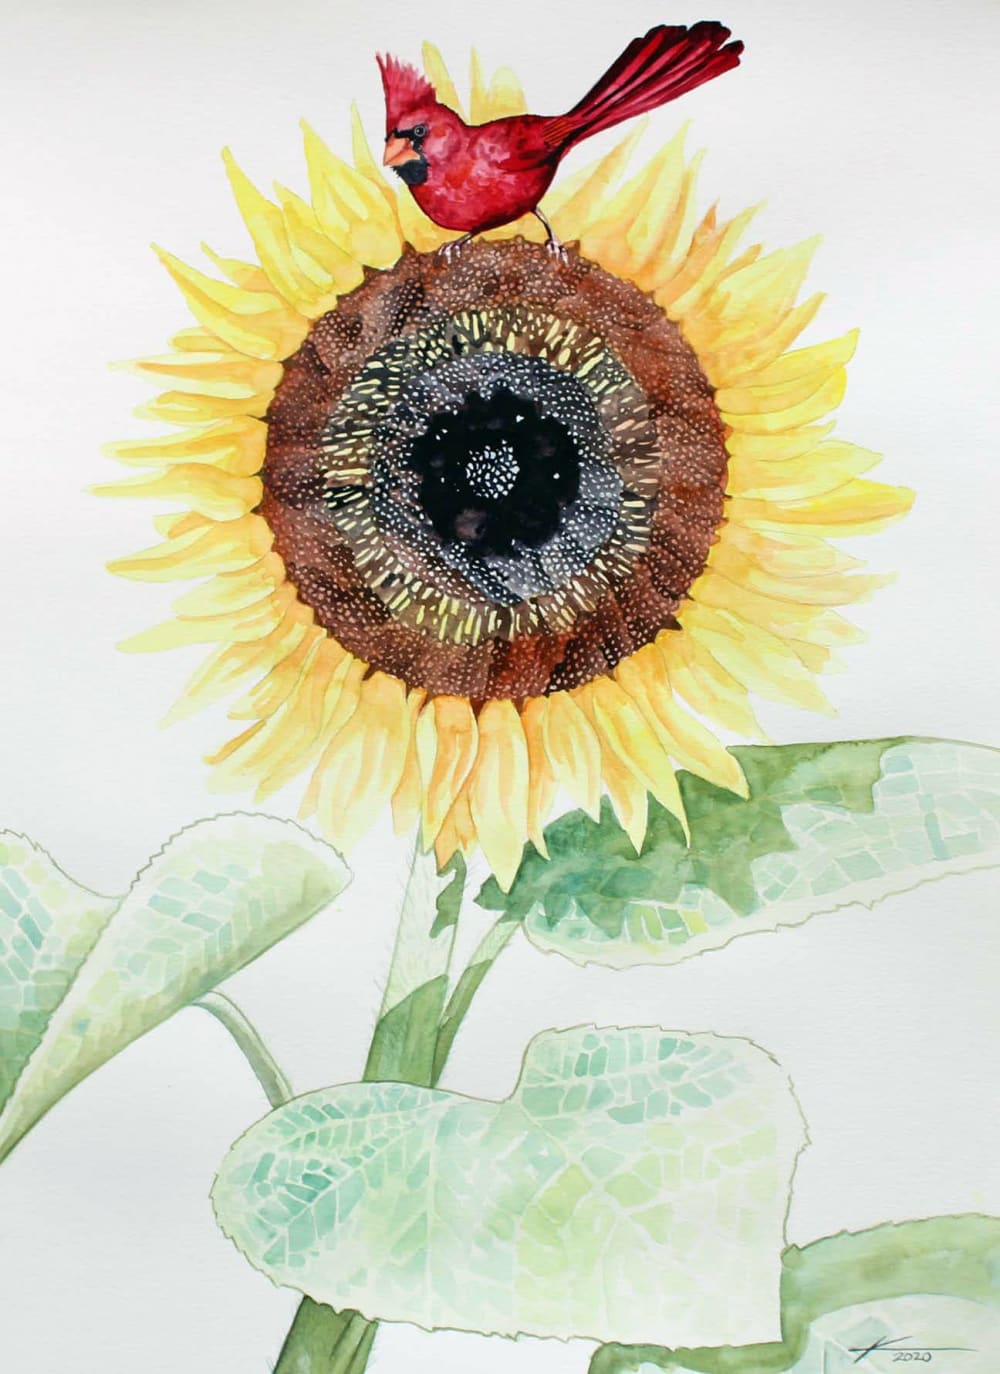 ᏅᏓᎠᏍᏓᏩᏗᏙᎯ  nv-da-a-s-da-wa-di-do-h  Sunflower